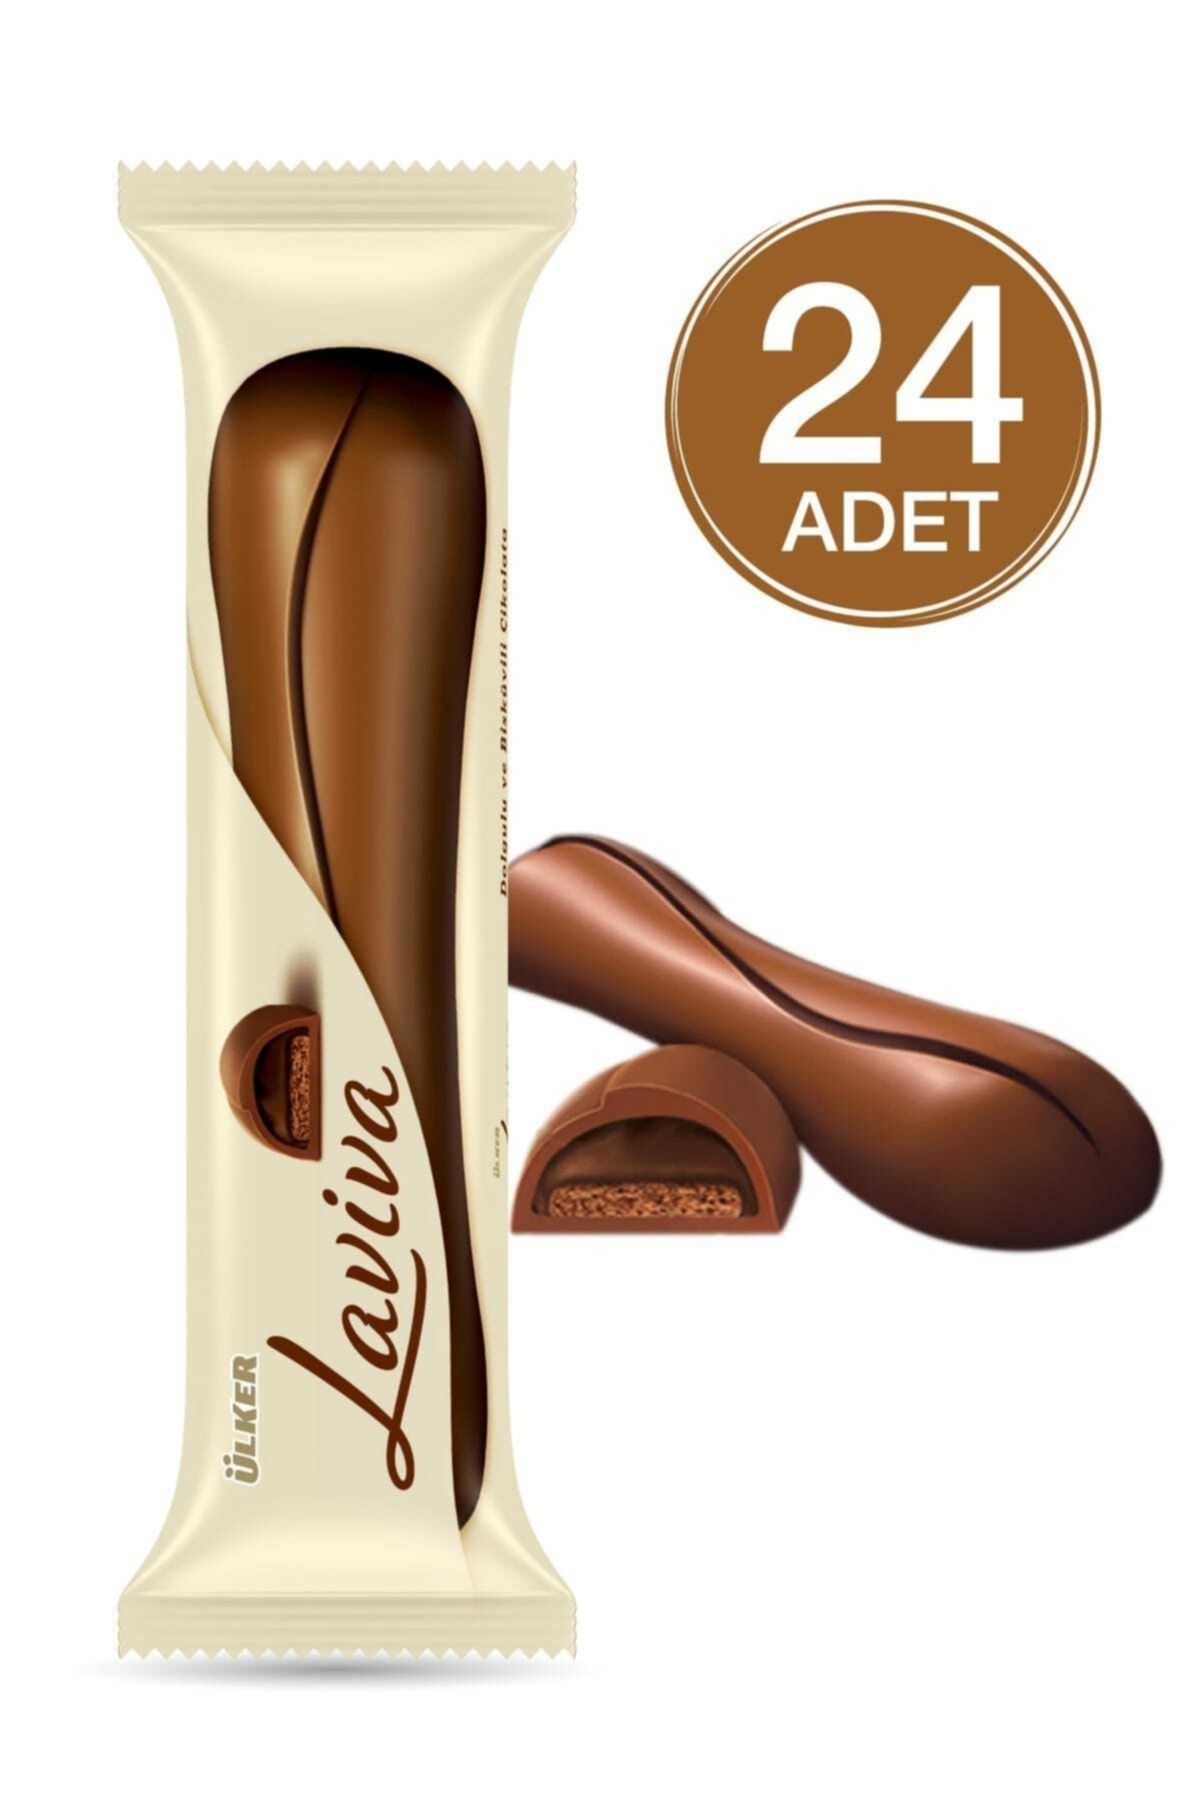 Ülker Laviva Baton Çikolata 35 gr